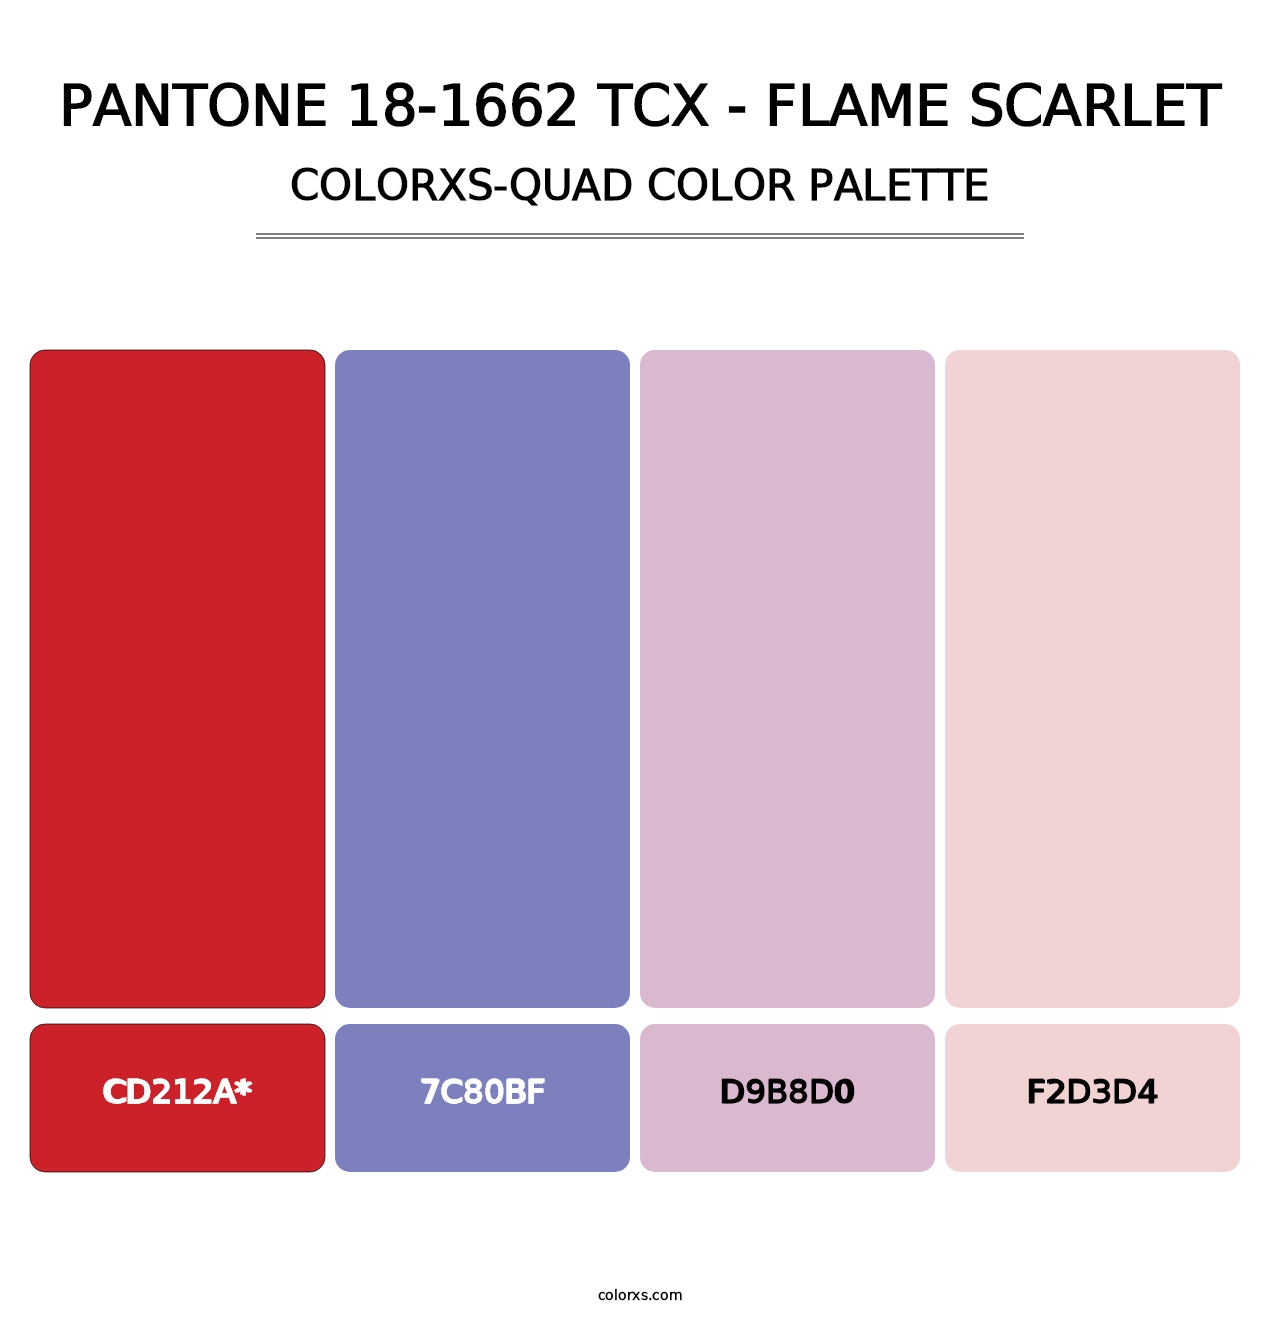 PANTONE 18-1662 TCX - Flame Scarlet - Colorxs Quad Palette